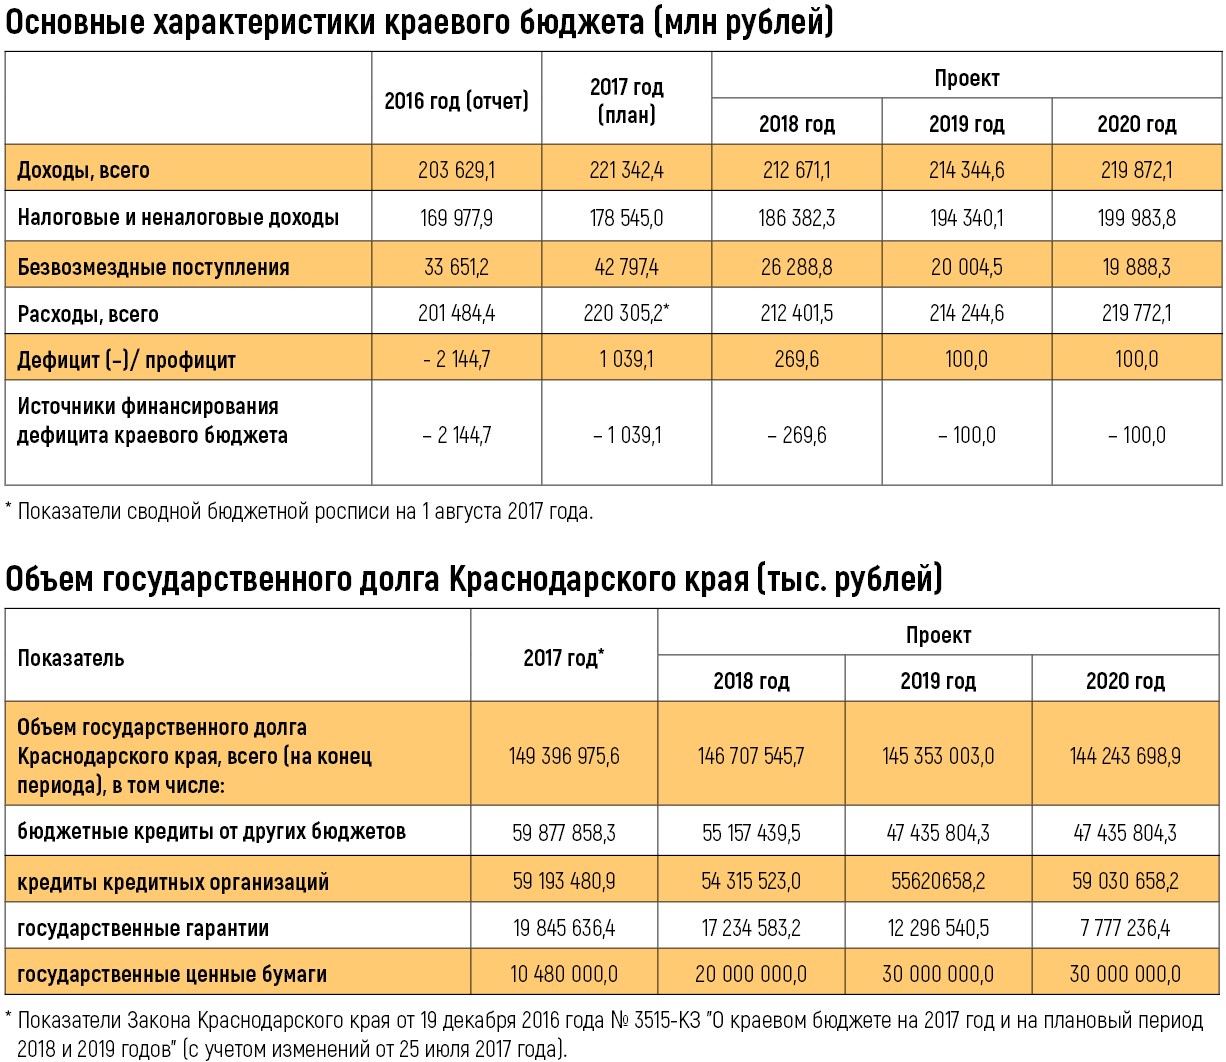 Федеральный закон о федеральном бюджете на 2020. Расходы Краснодарского края 2020. Расходы бюджета Краснодарского края.